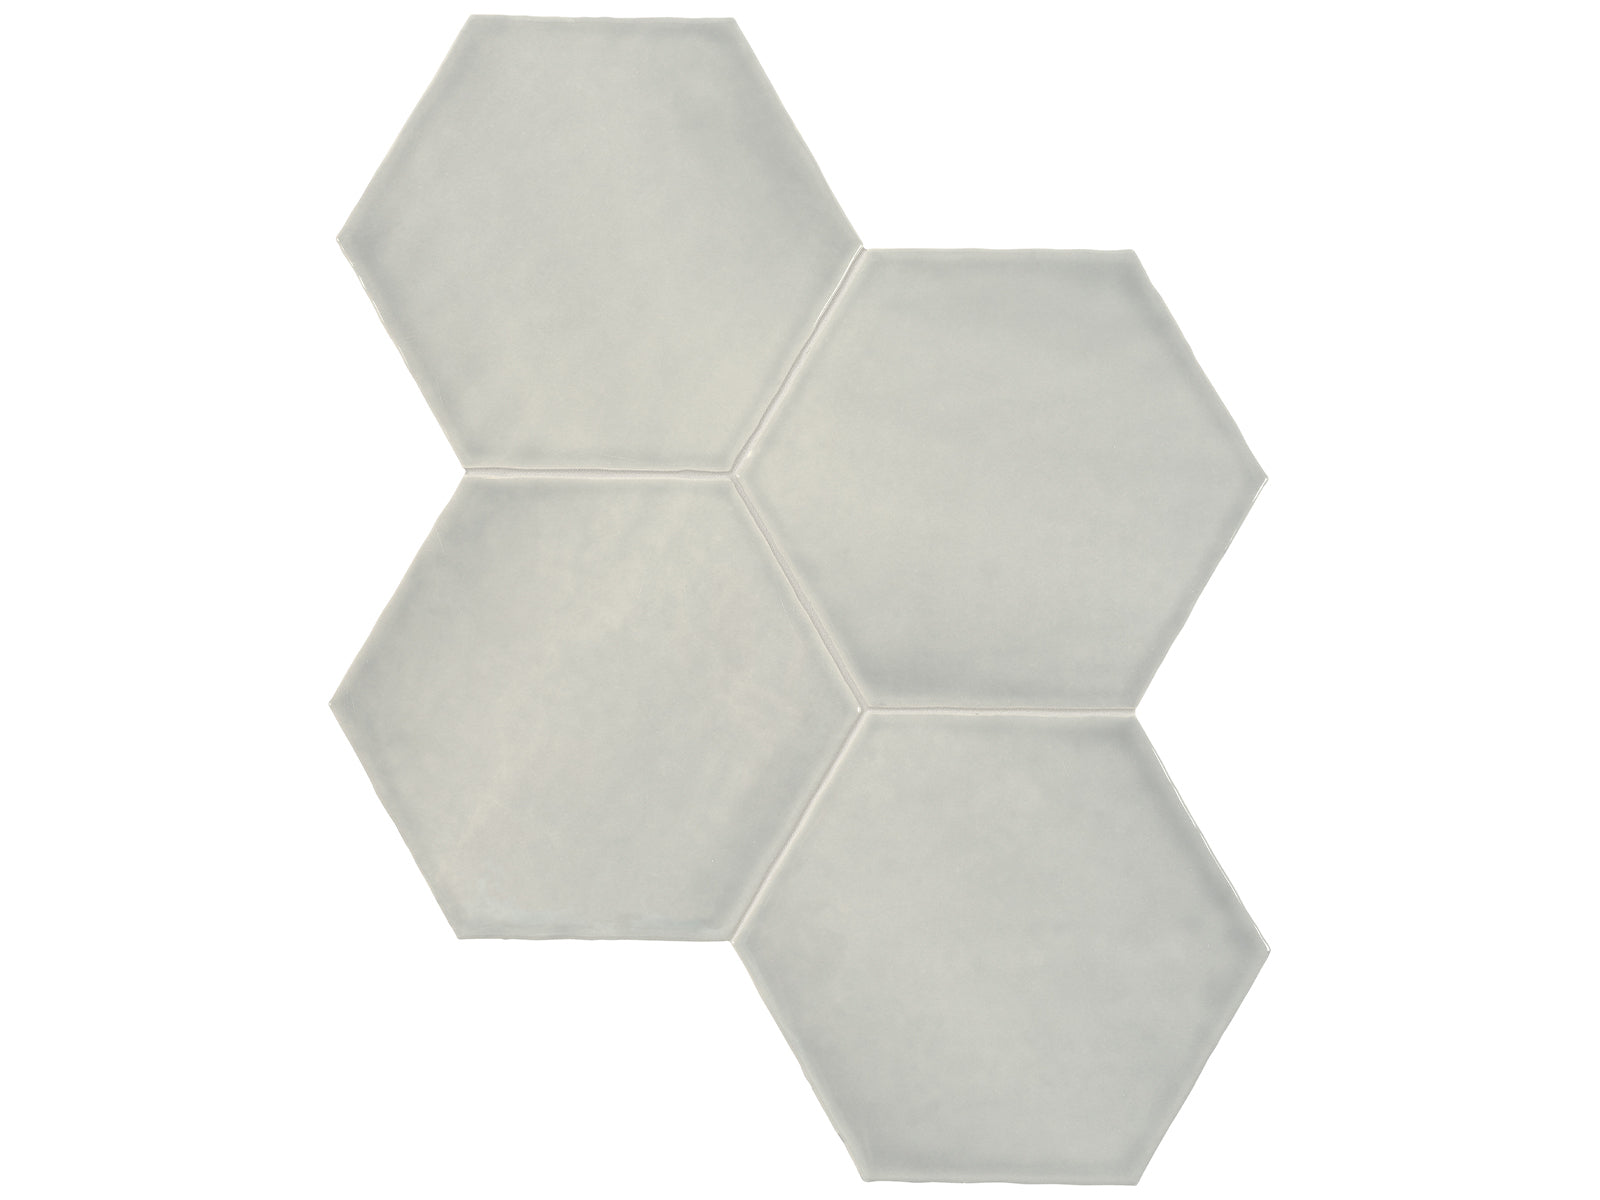 6 in Teramoda Bamboo Hexagon Glossy Pressed Glazed Ceramic Tile